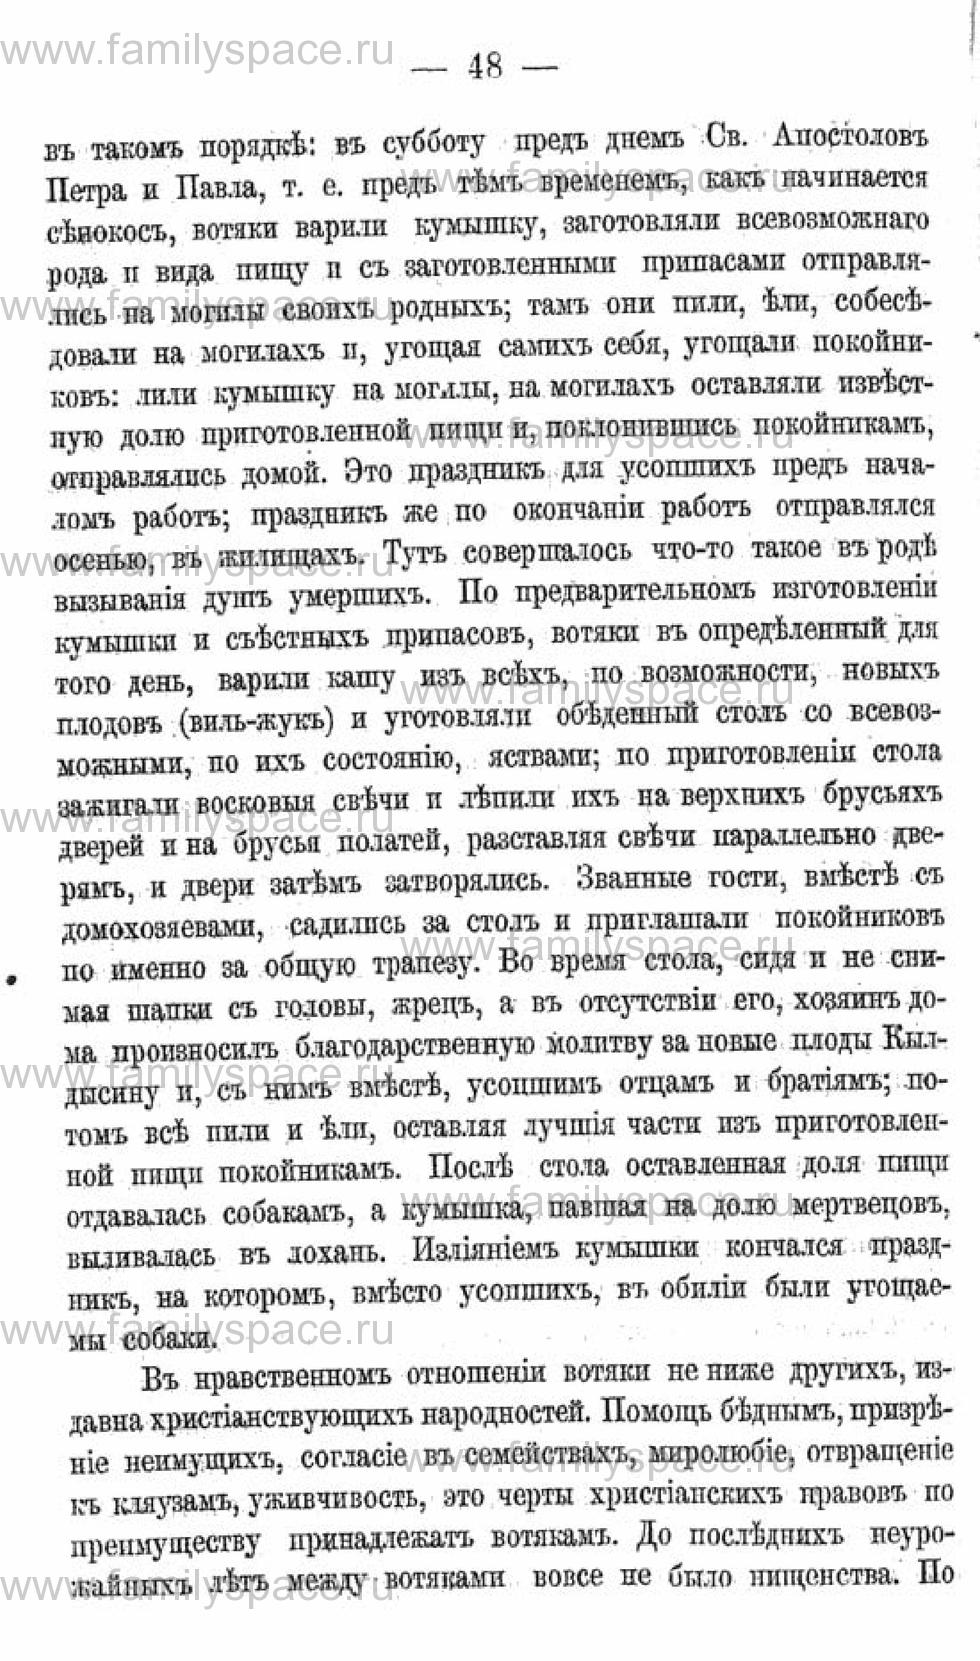 Поиск по фамилии - Календарь Вятской губернии - 1880, страница 2048